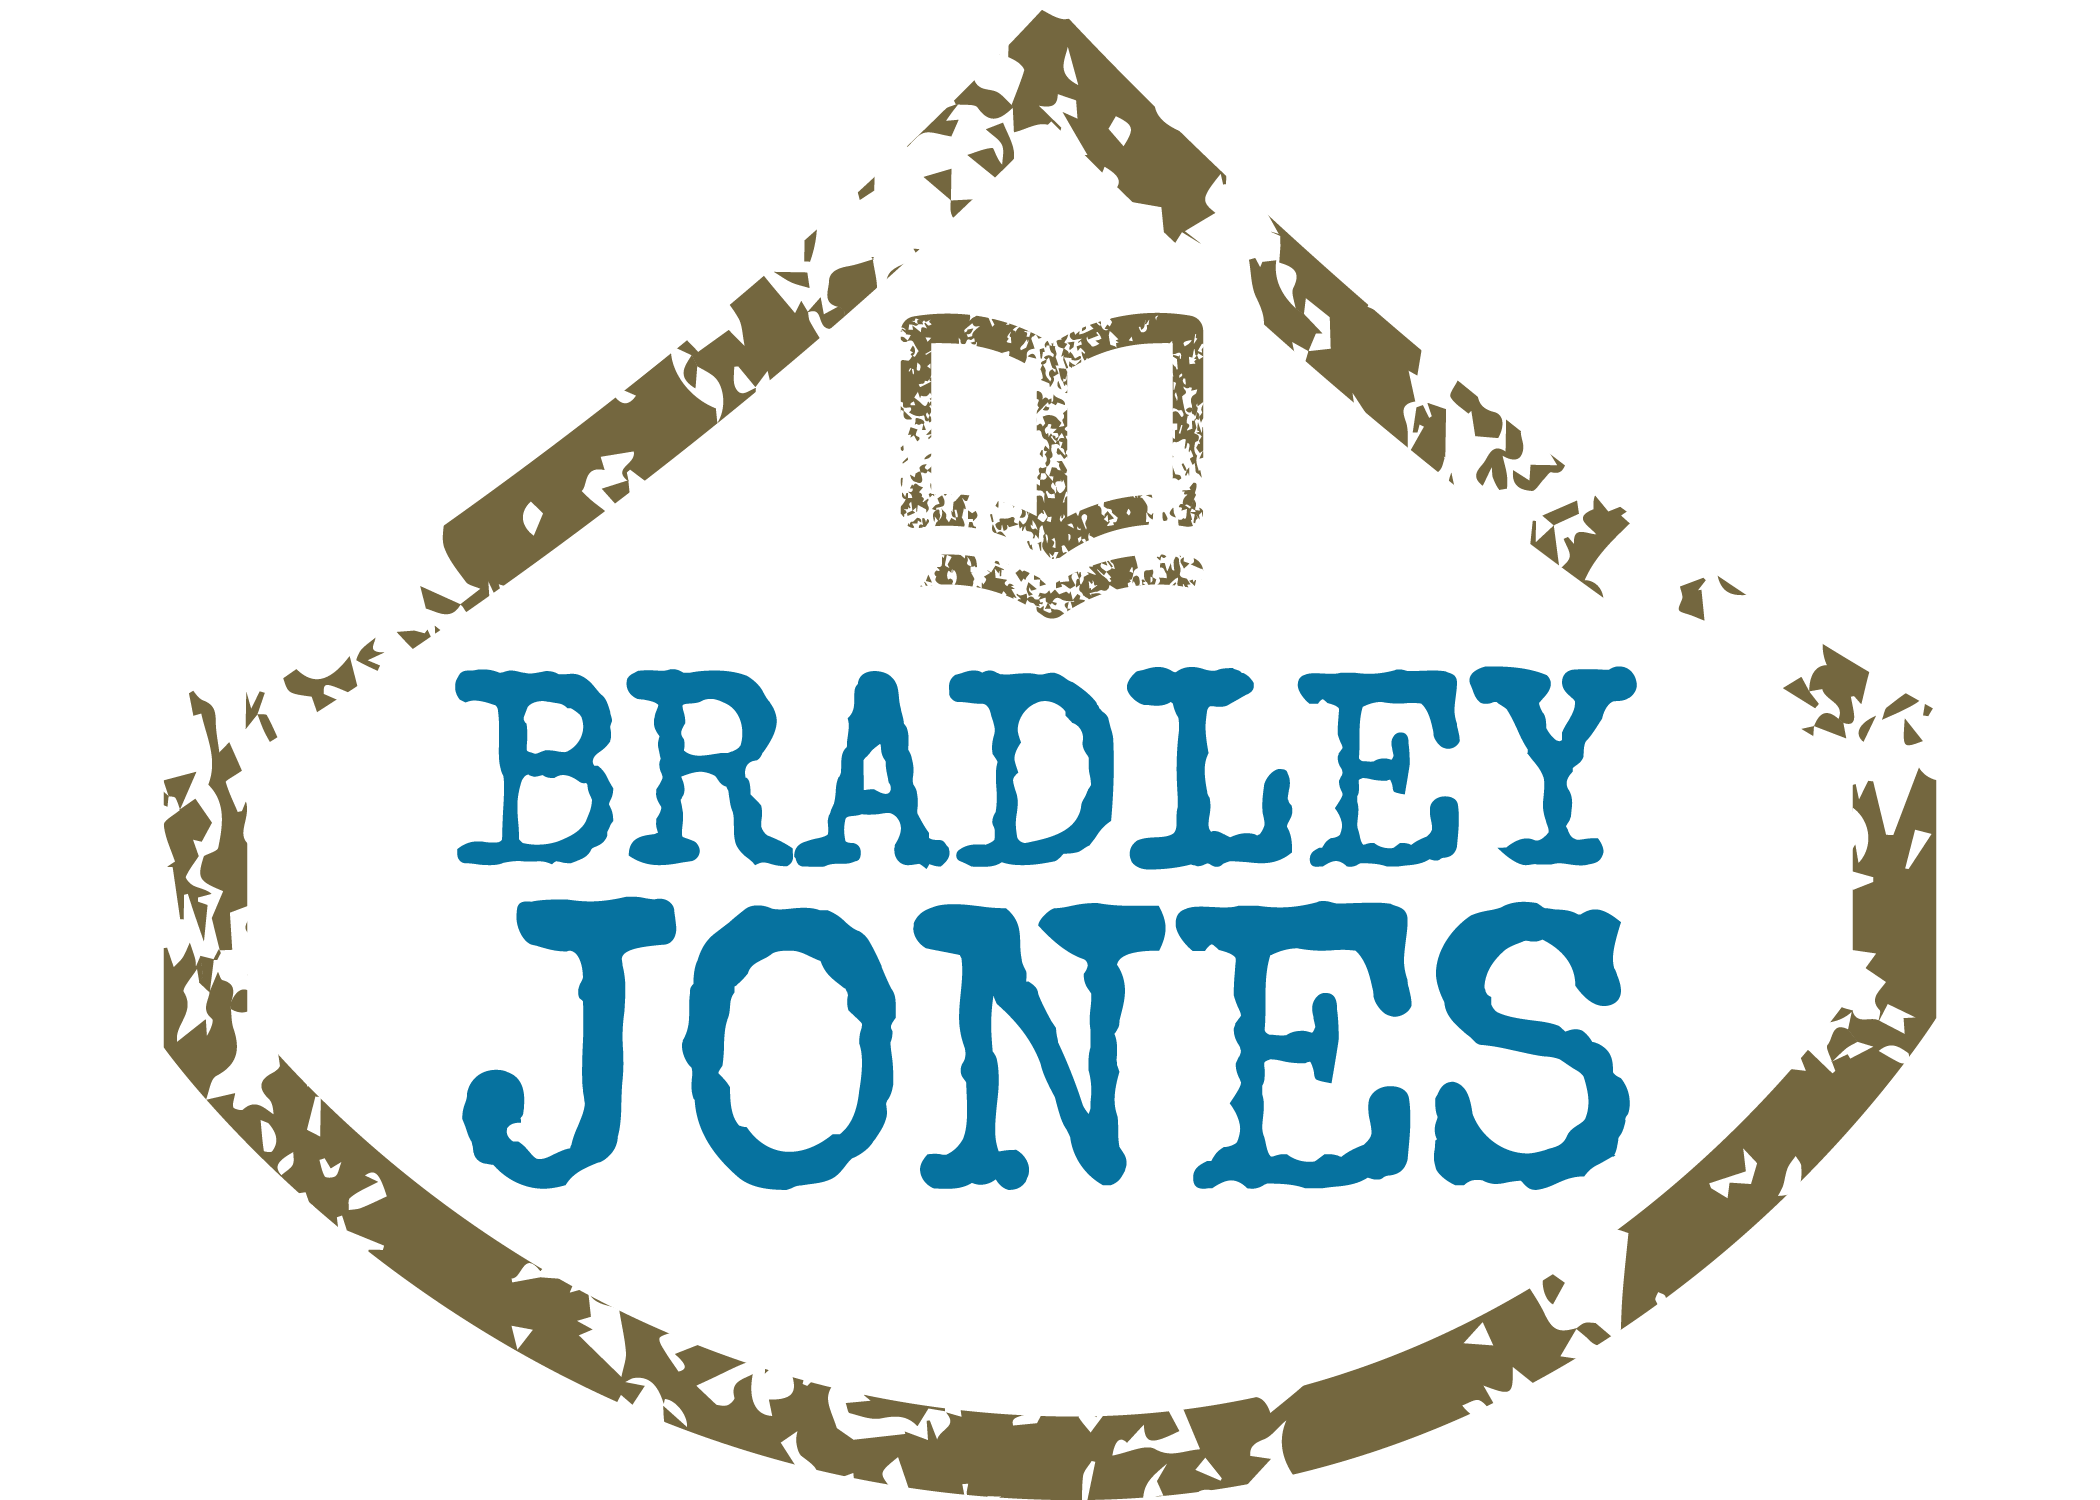 Author Bradley Jones